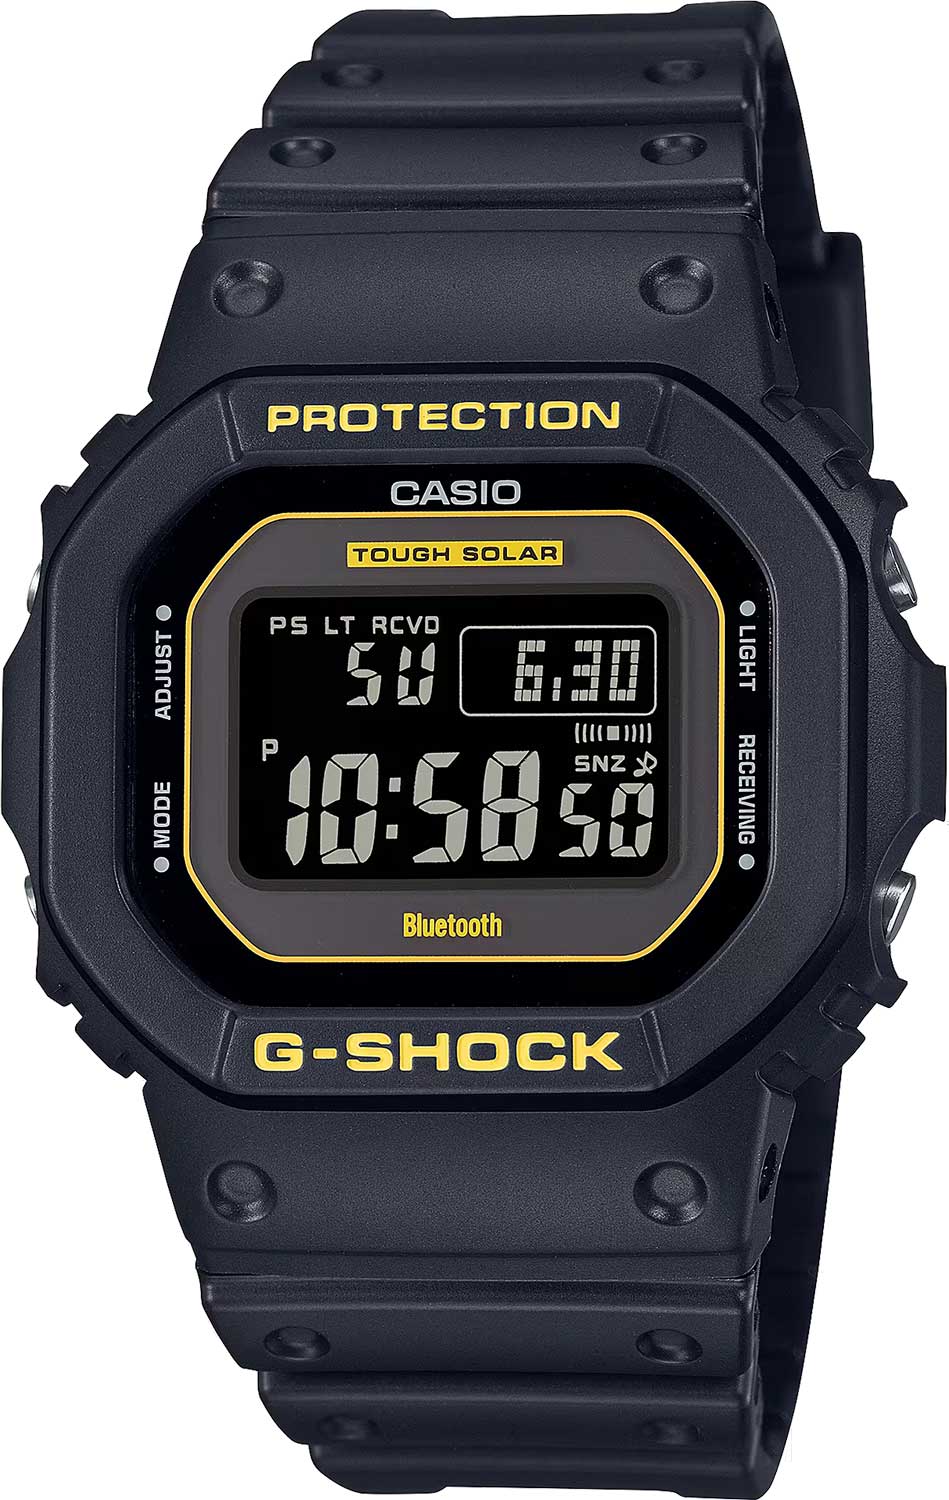    Casio G-SHOCK GW-B5600CY-1  